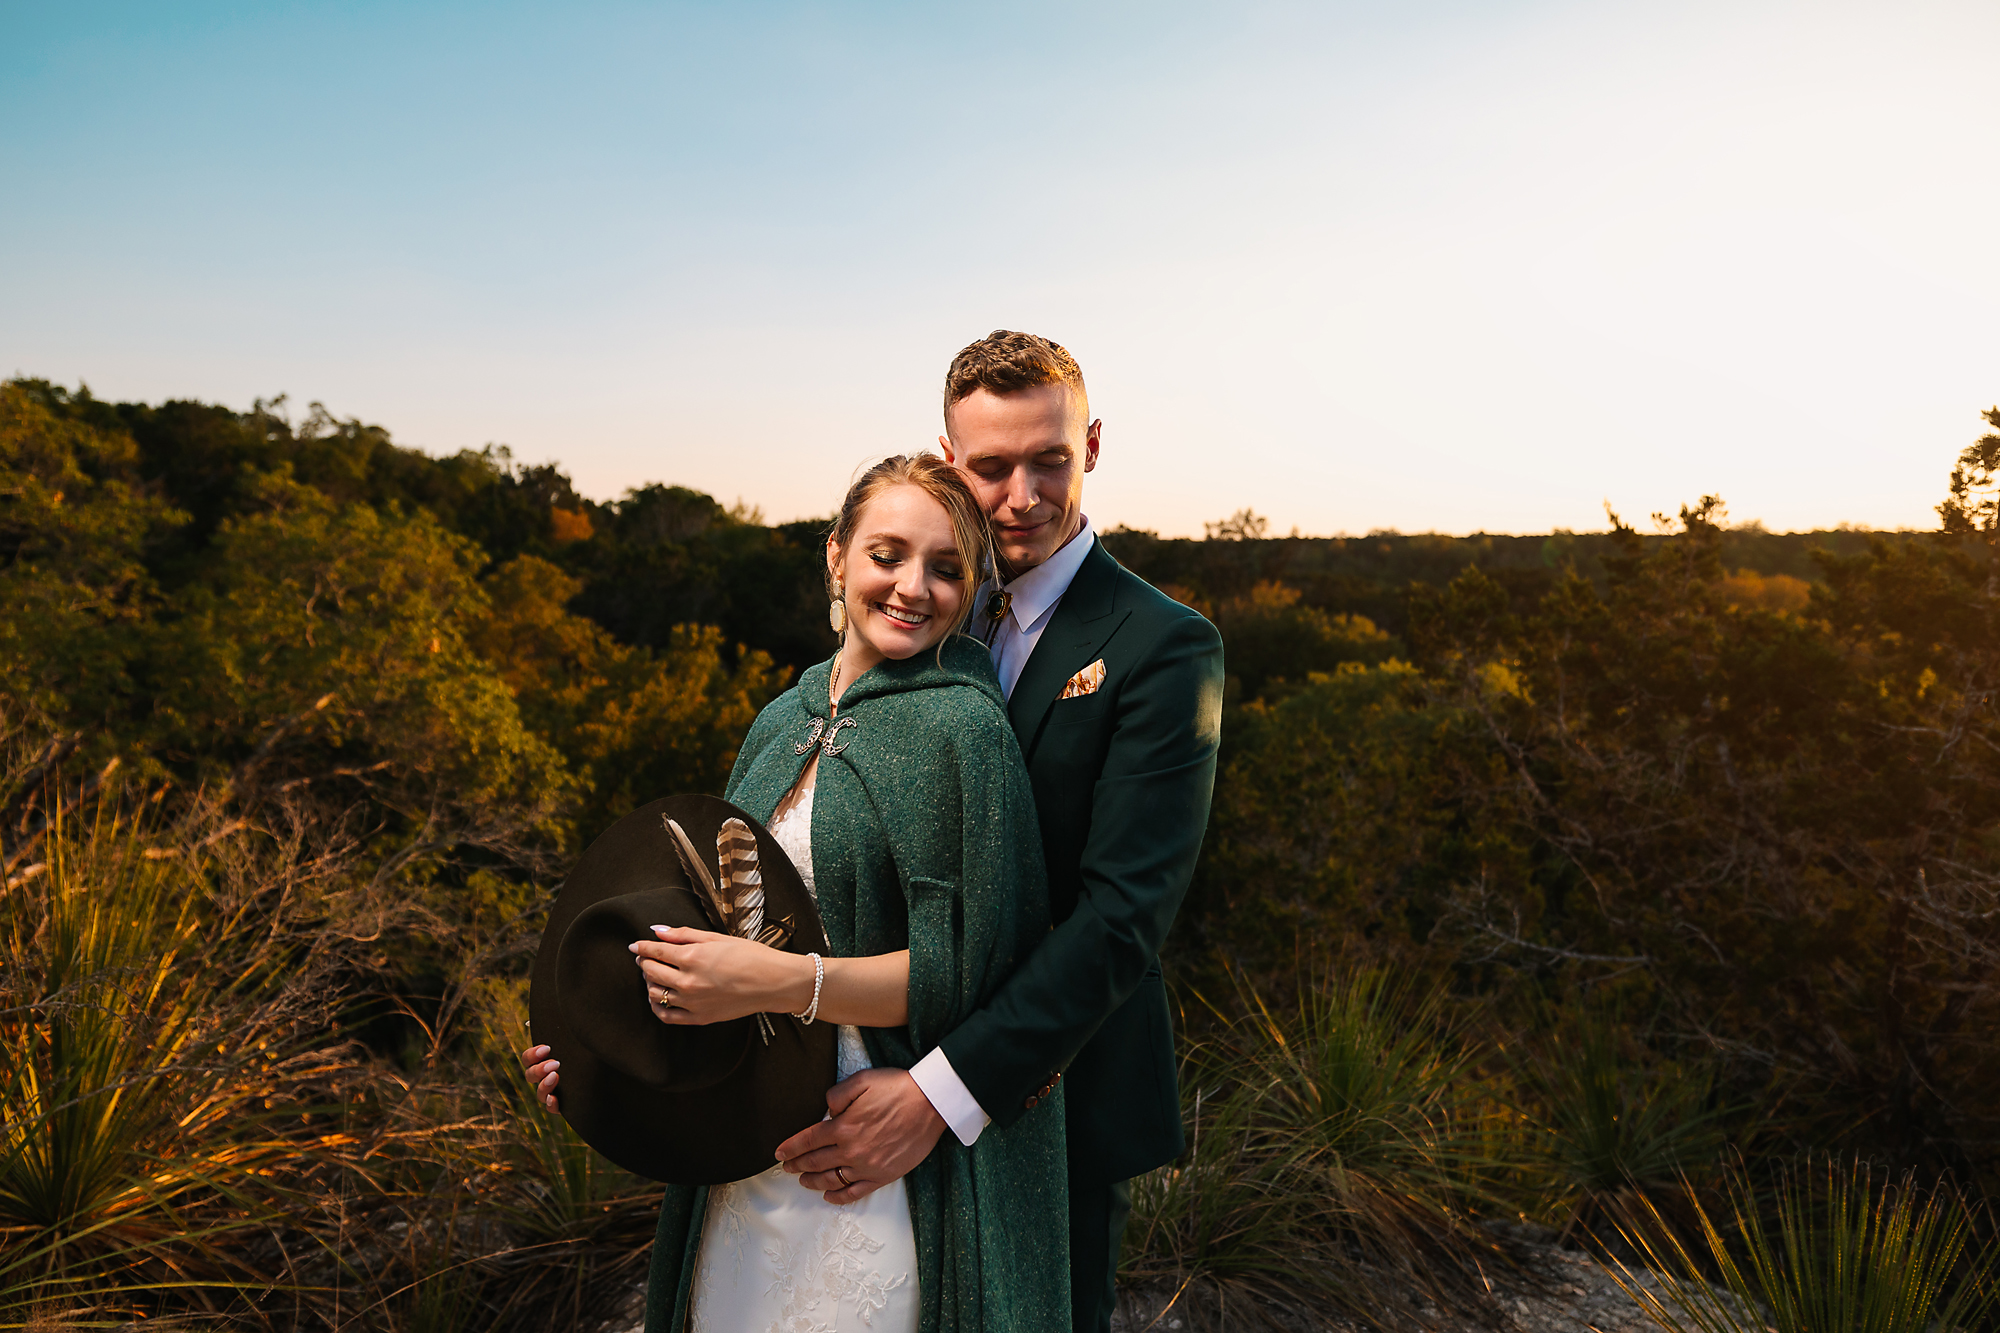 explore an amazing DIY outdoor wedding at elm pass woods in comfort, texas.